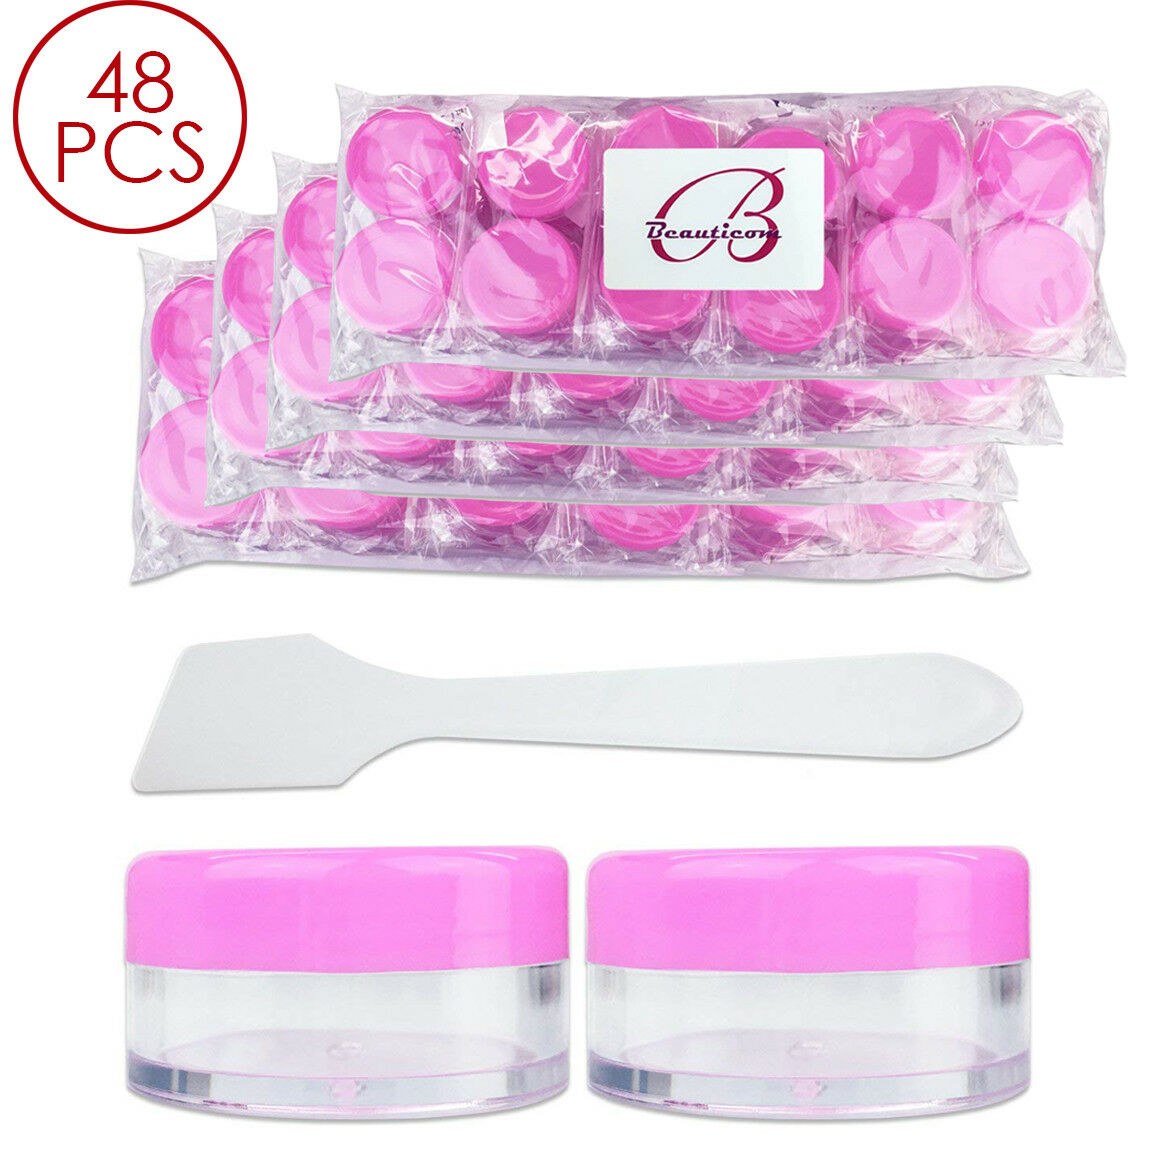 48pcs 10g/10ml Makeup Creme Kosmetik Pink Muster Dose Behälter Mit Spachtel